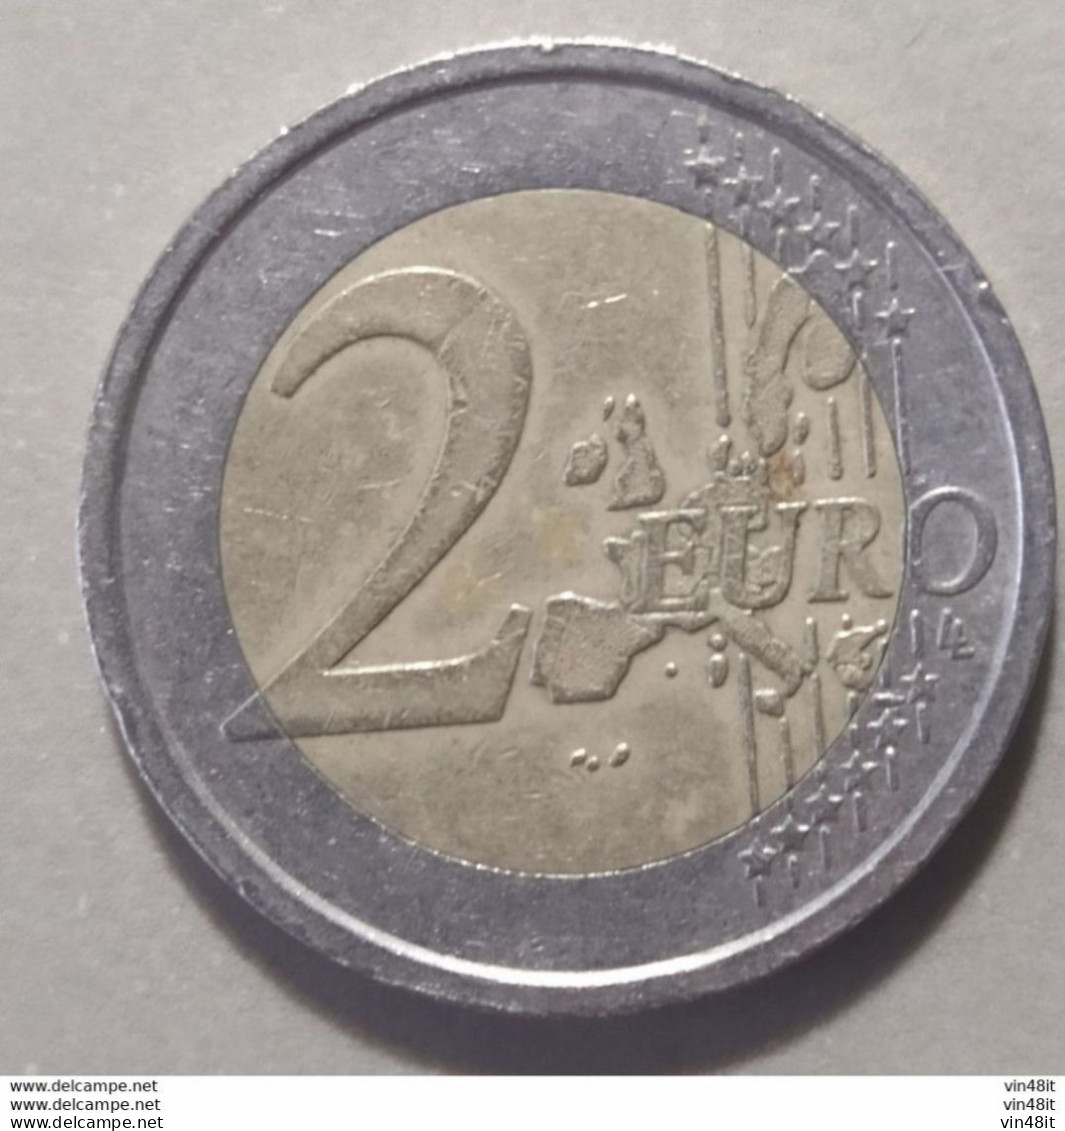 2002 -  GRECIA -  MONETA IN EURO - (COMMEMORATIVA)   DEL VALORE DI  2,00  EURO  - USATA - Cyprus